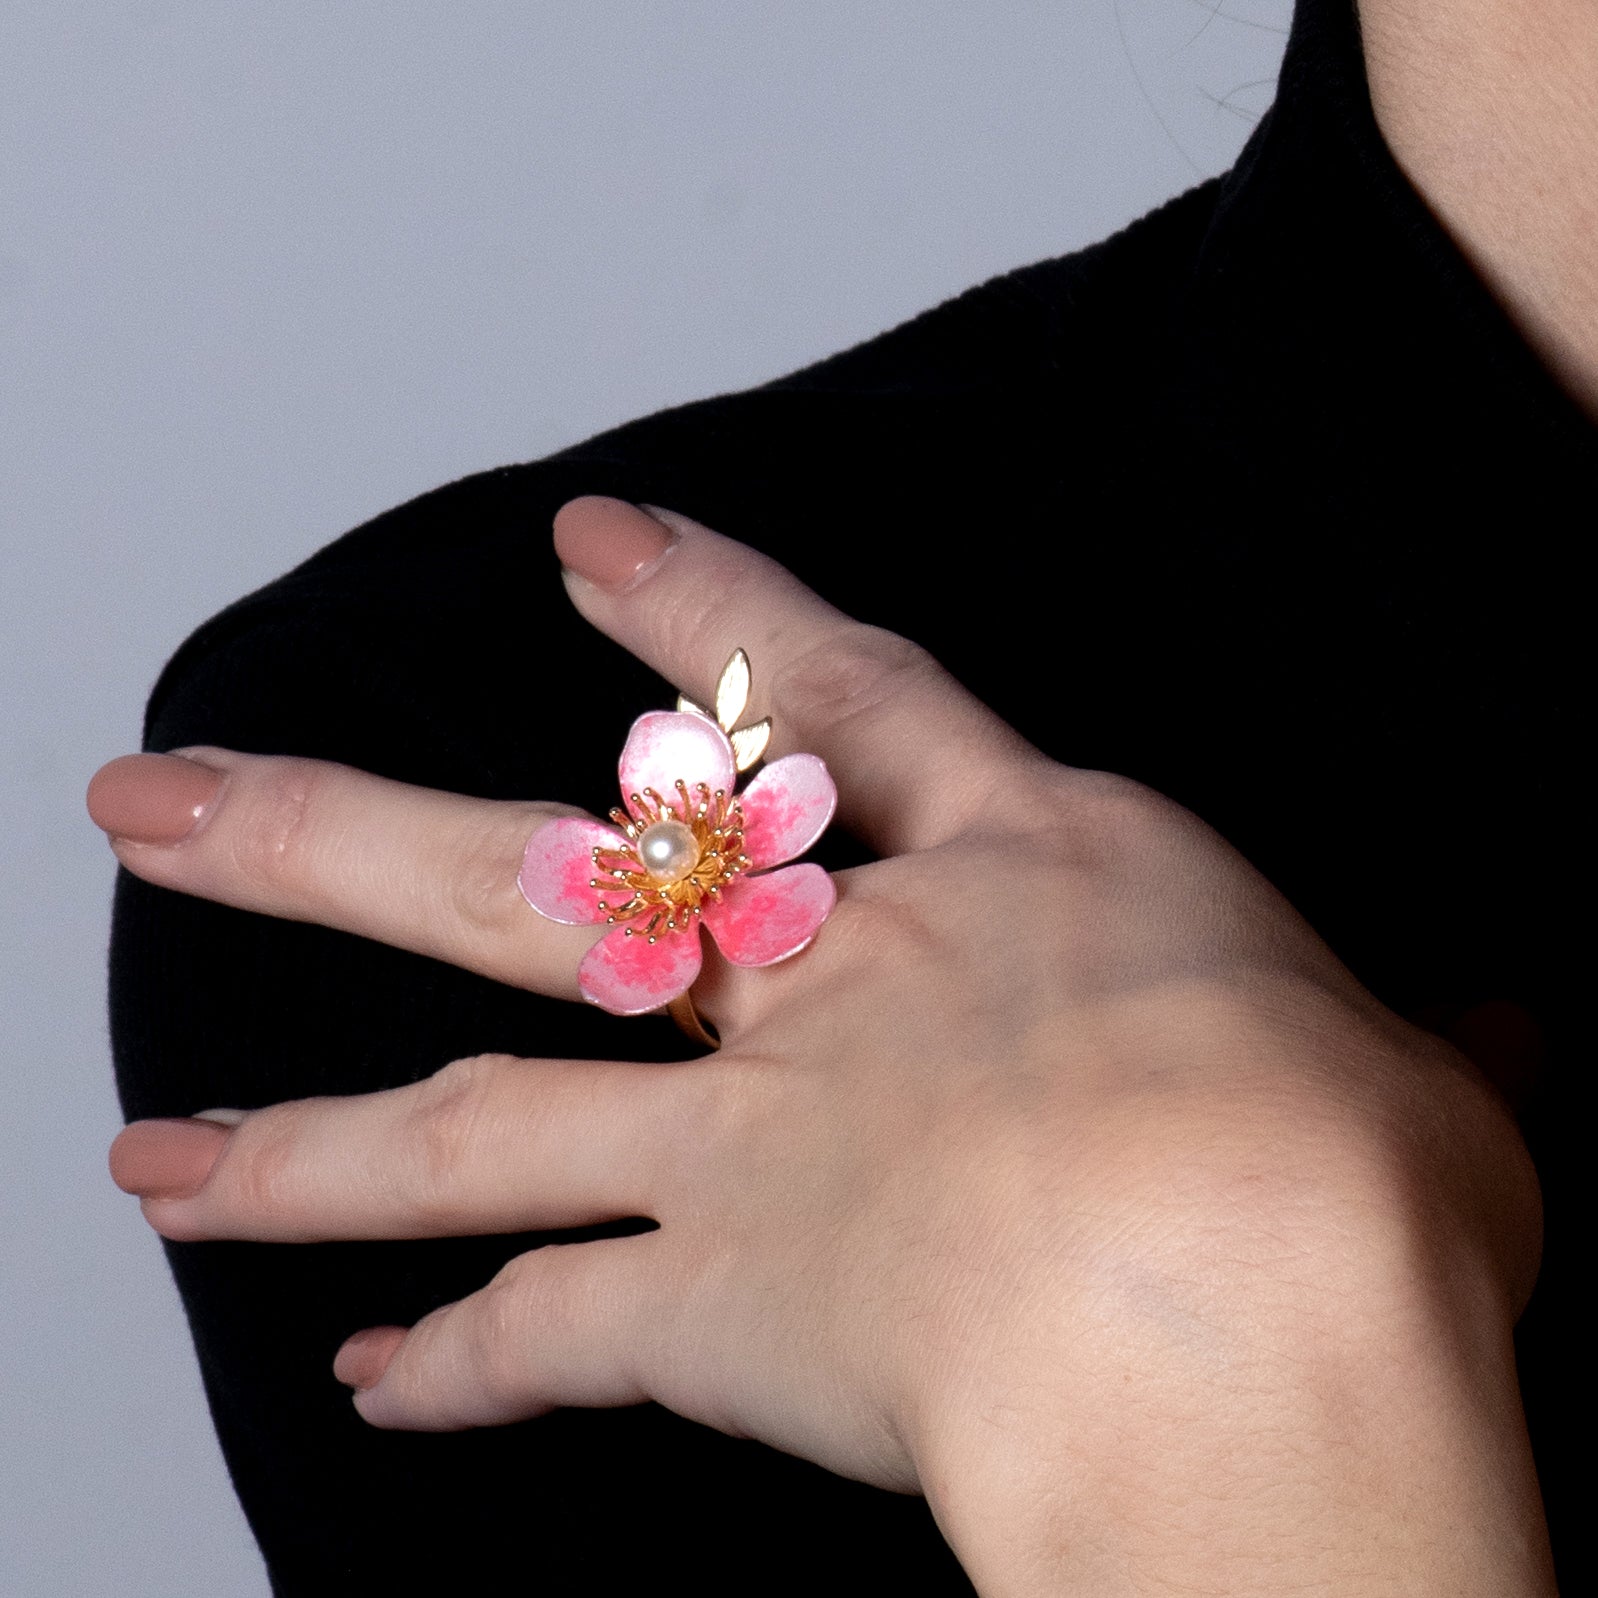 Kirschblüten-Sakura-Perlenring - Cherry Blossom Sakura Pearl Ring-2